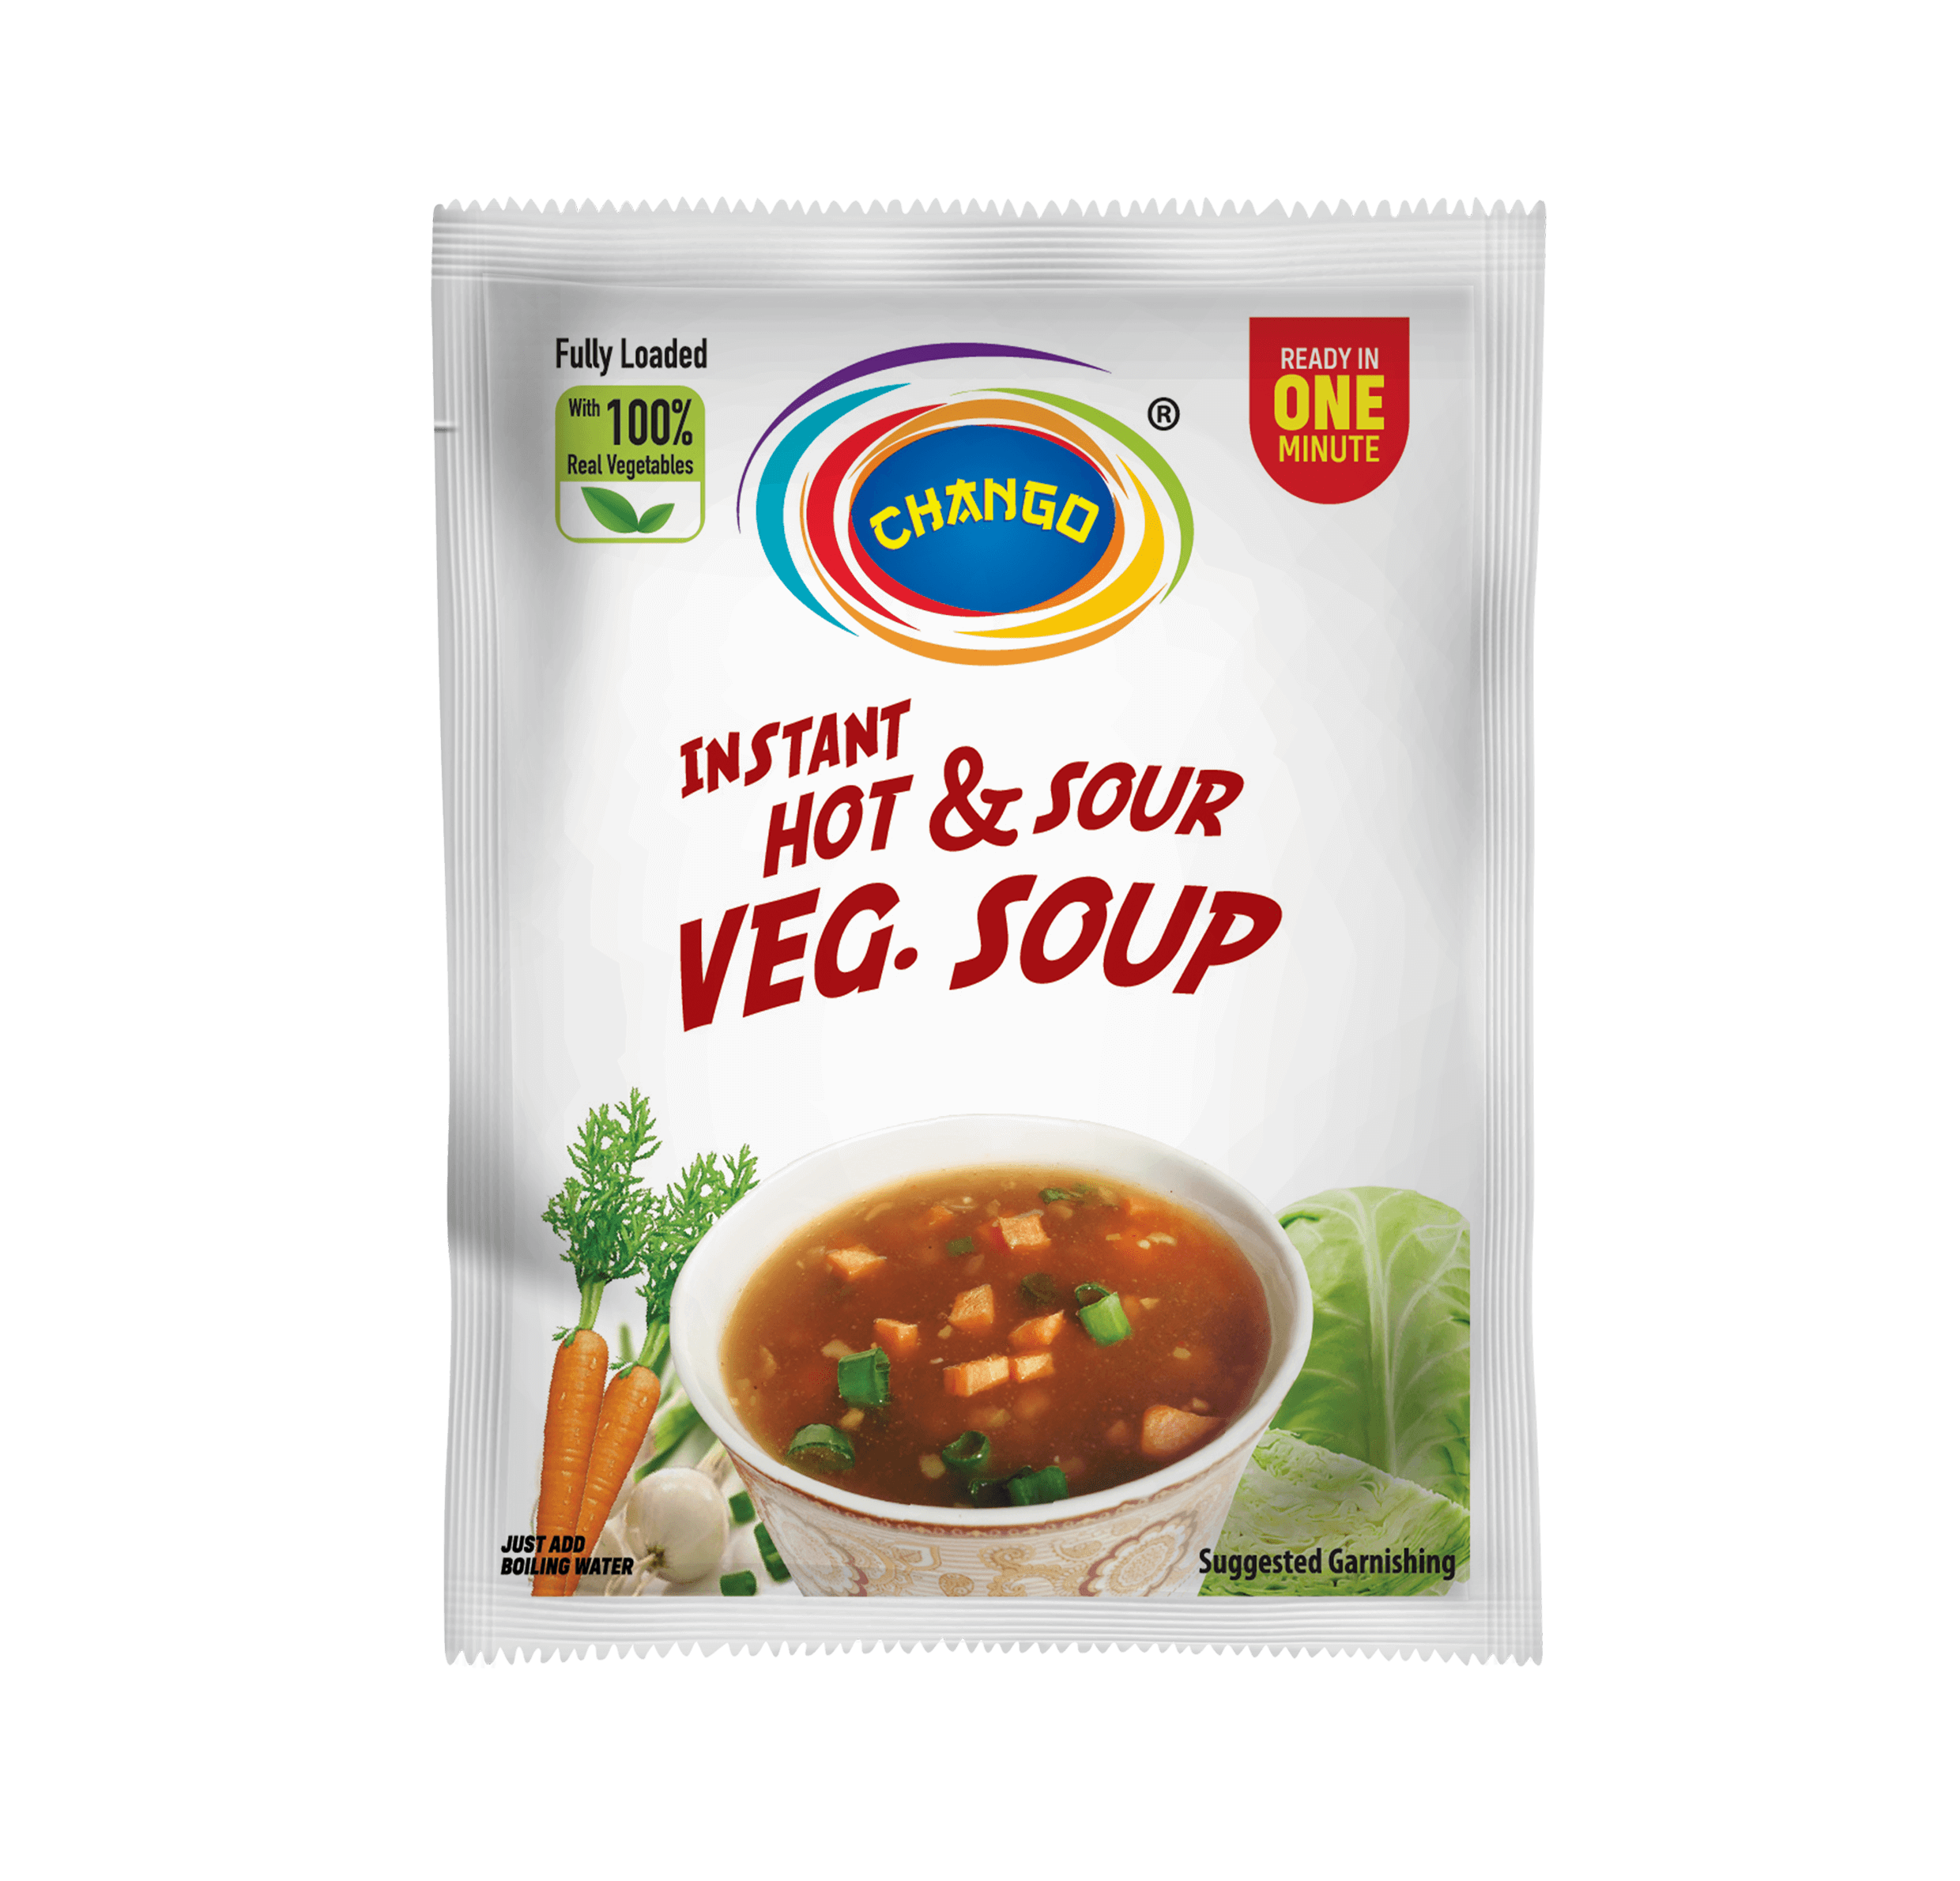 instant hot & sour soup manufacturer